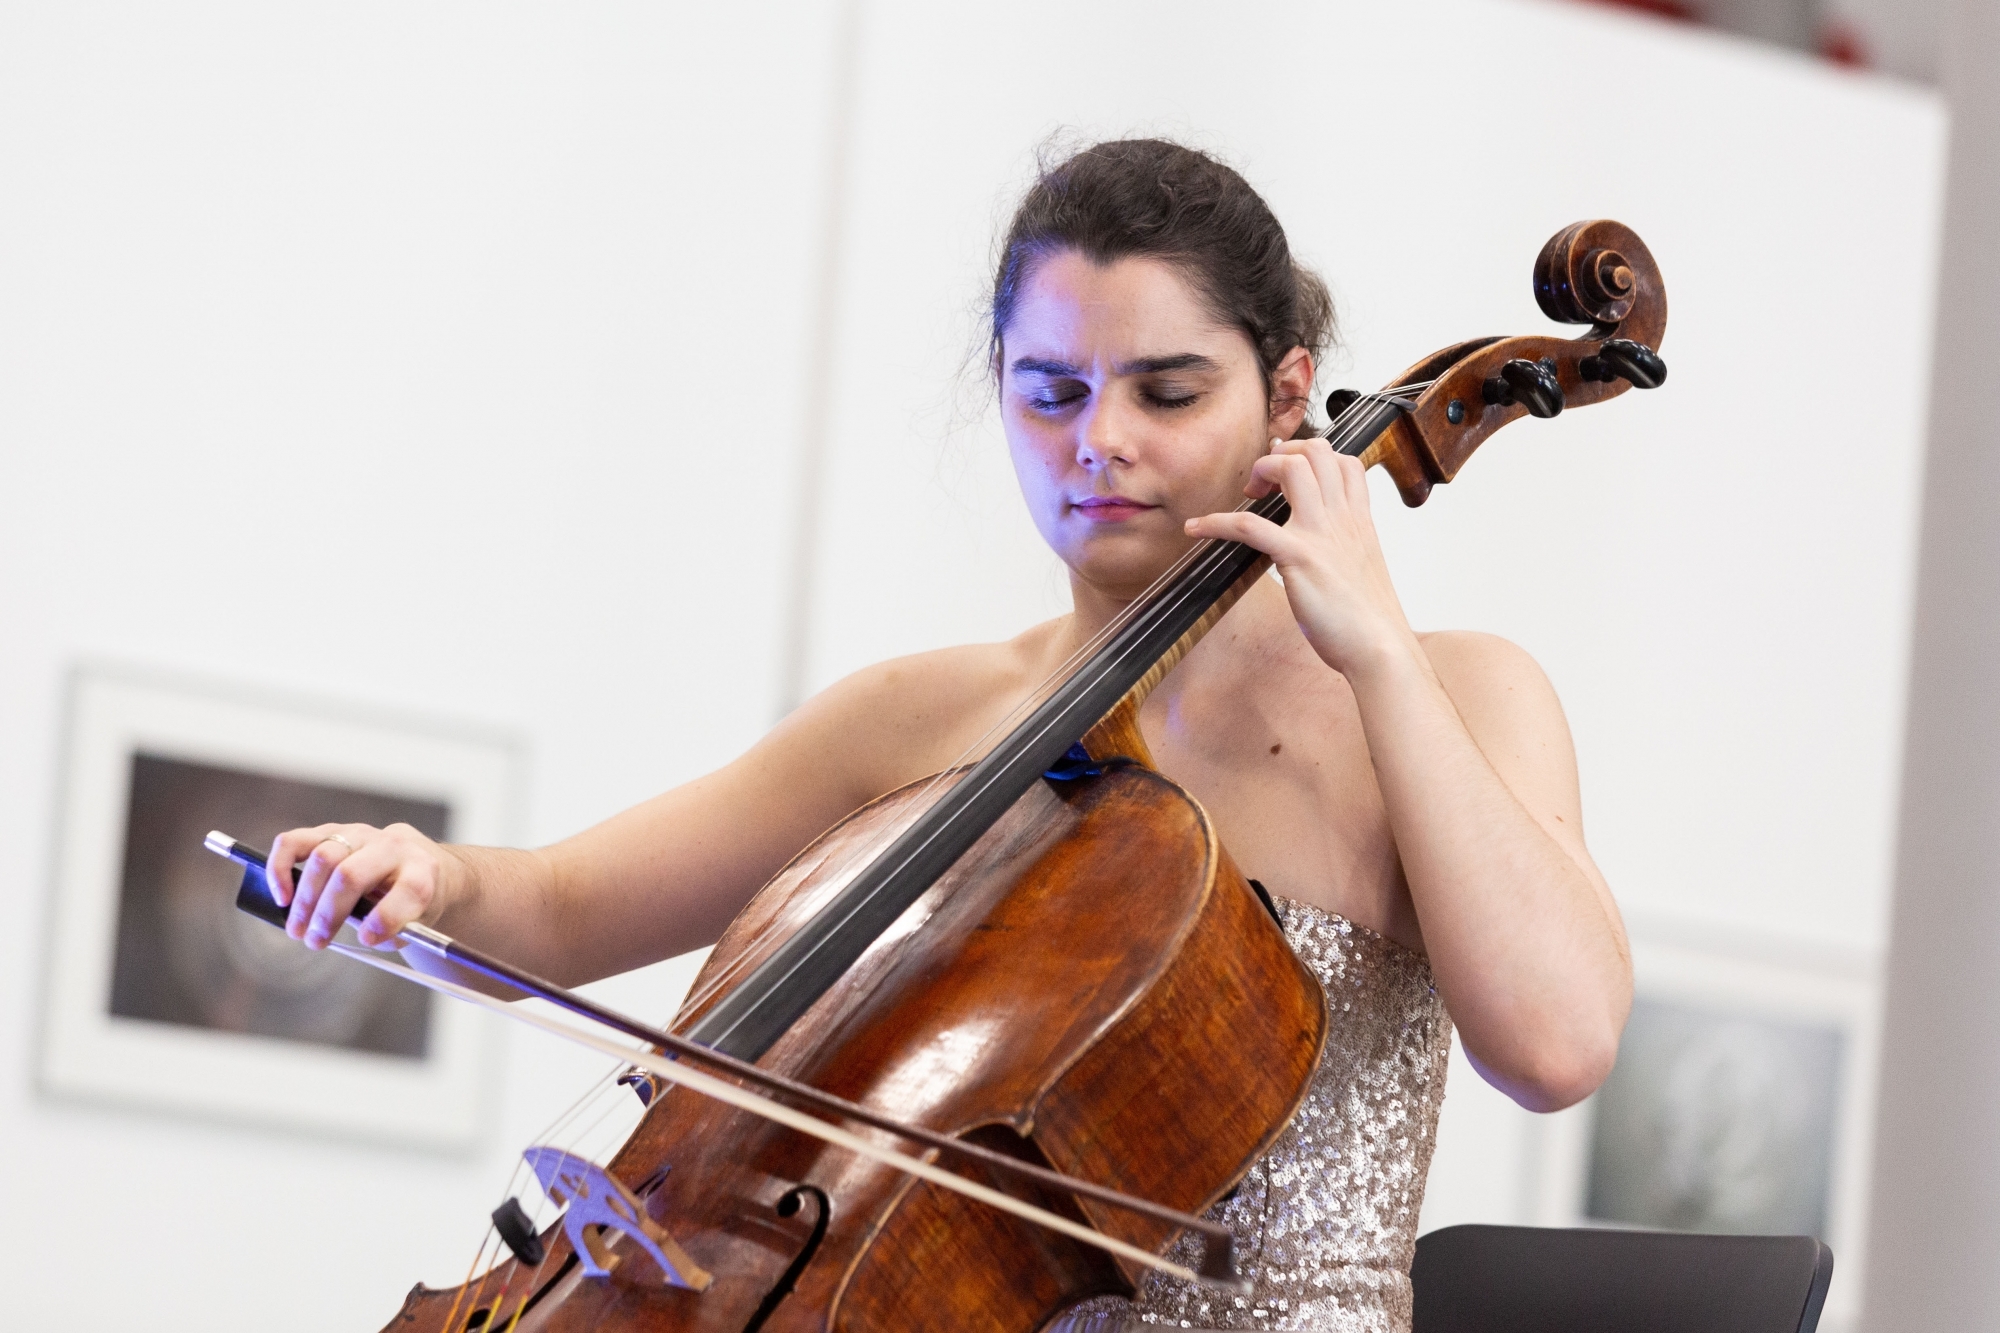 La violoncelliste Estelle Revaz avait donné l'impulsion pour mettre sur pied cette série de concerts de l'avent, qui sont malheureusement annulés.